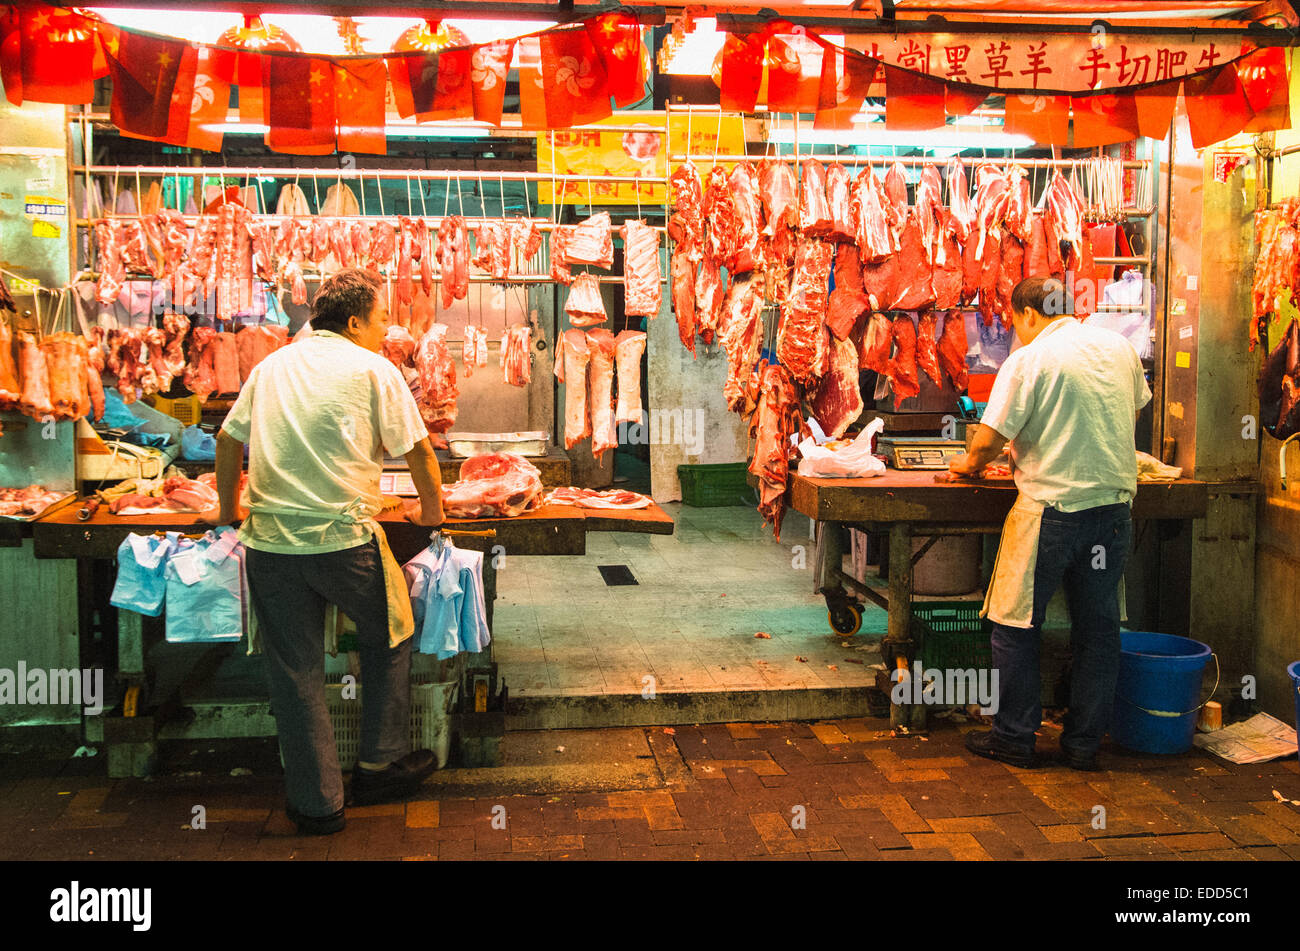 Butchers at night market of Hong Kong, China. Stock Photo